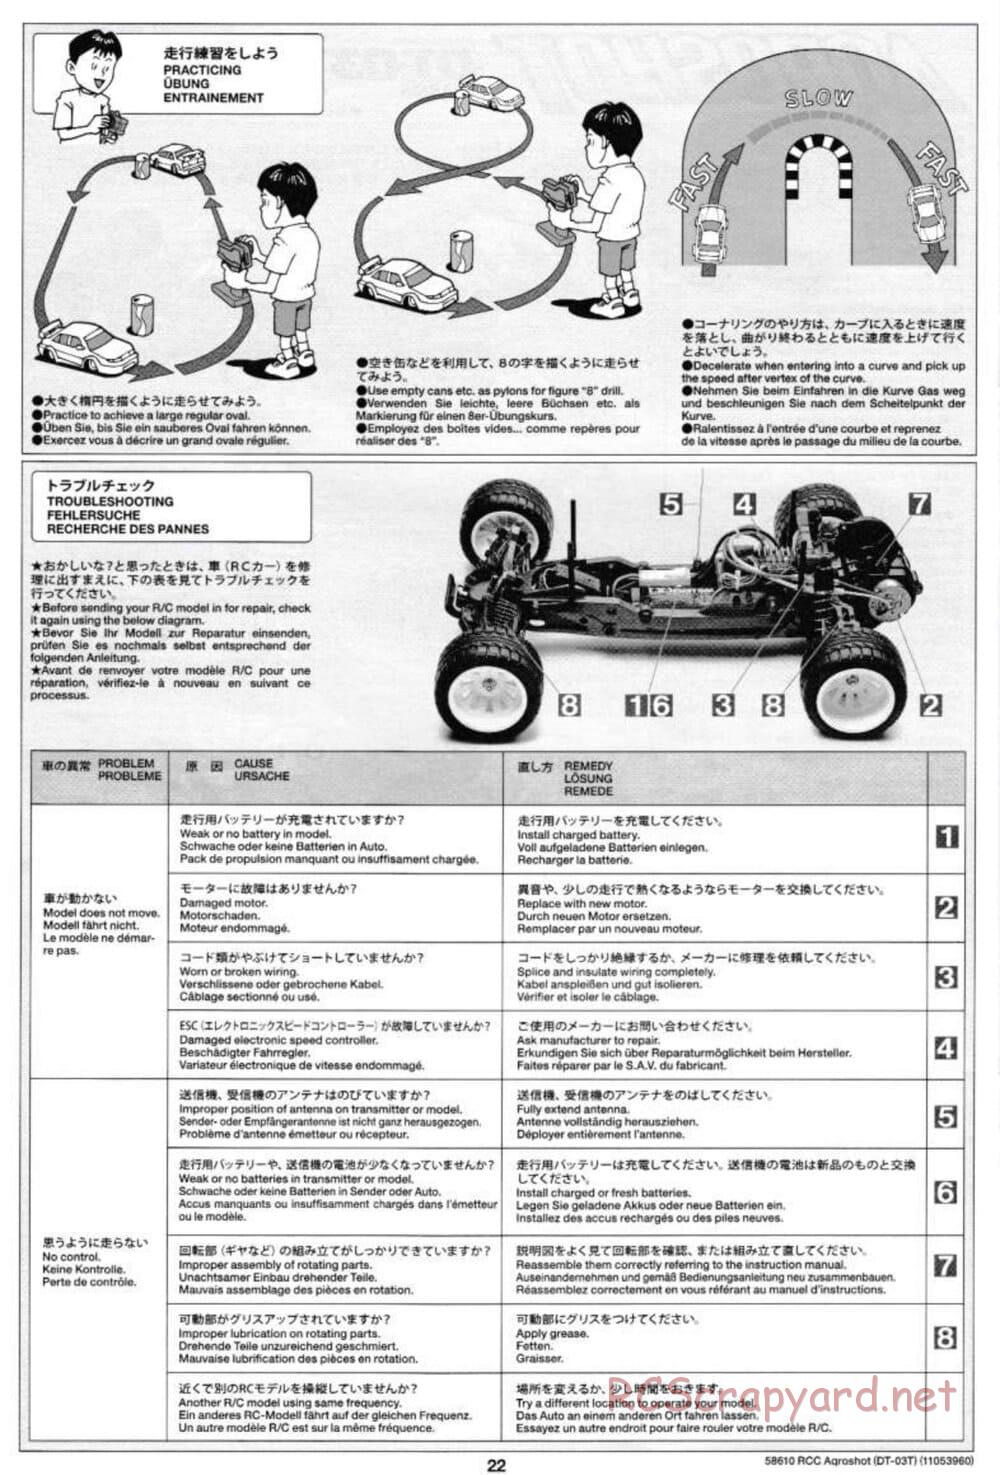 Tamiya - Aqroshot Chassis - Manual - Page 22